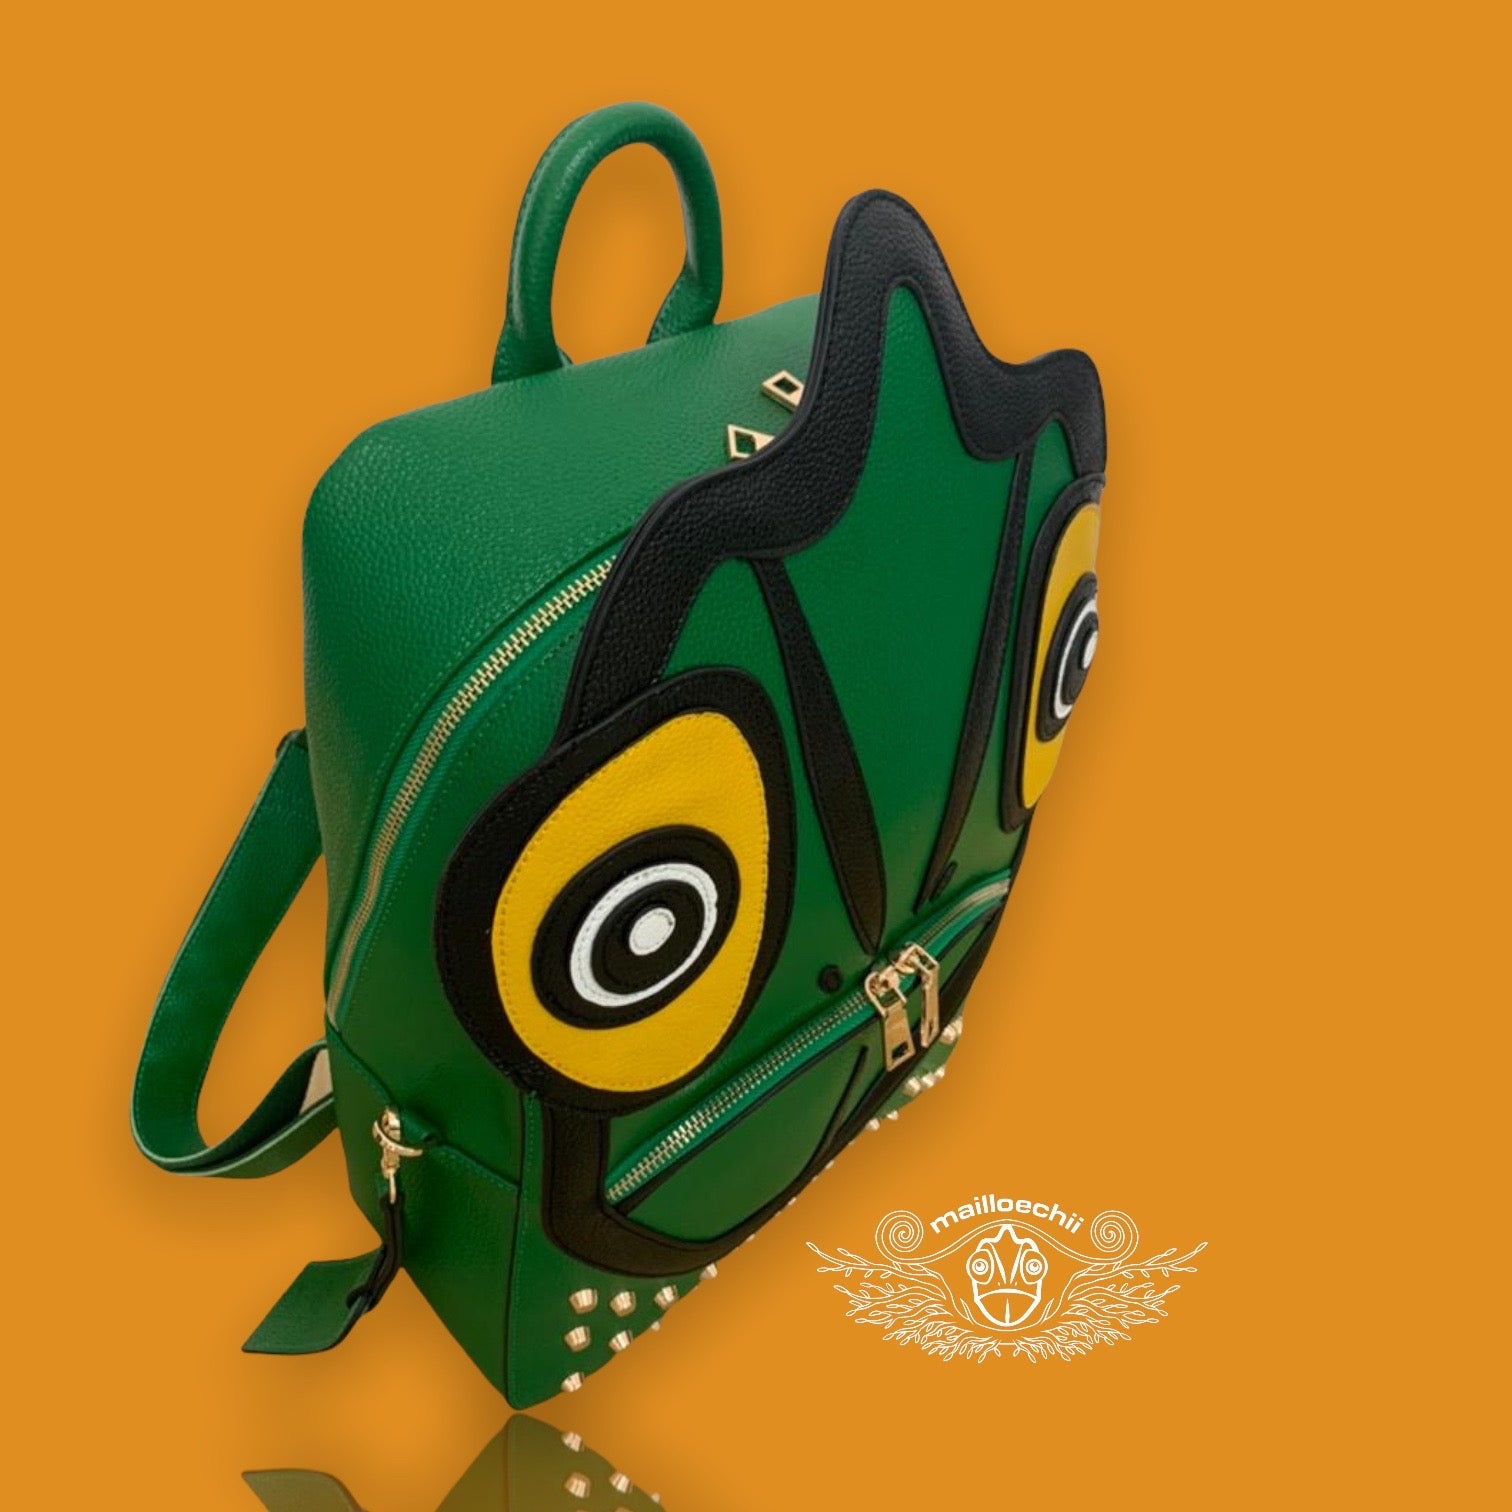 Mailloechii X Air Chameleon Iridescent Holographic Duffel Bag – mailloechii